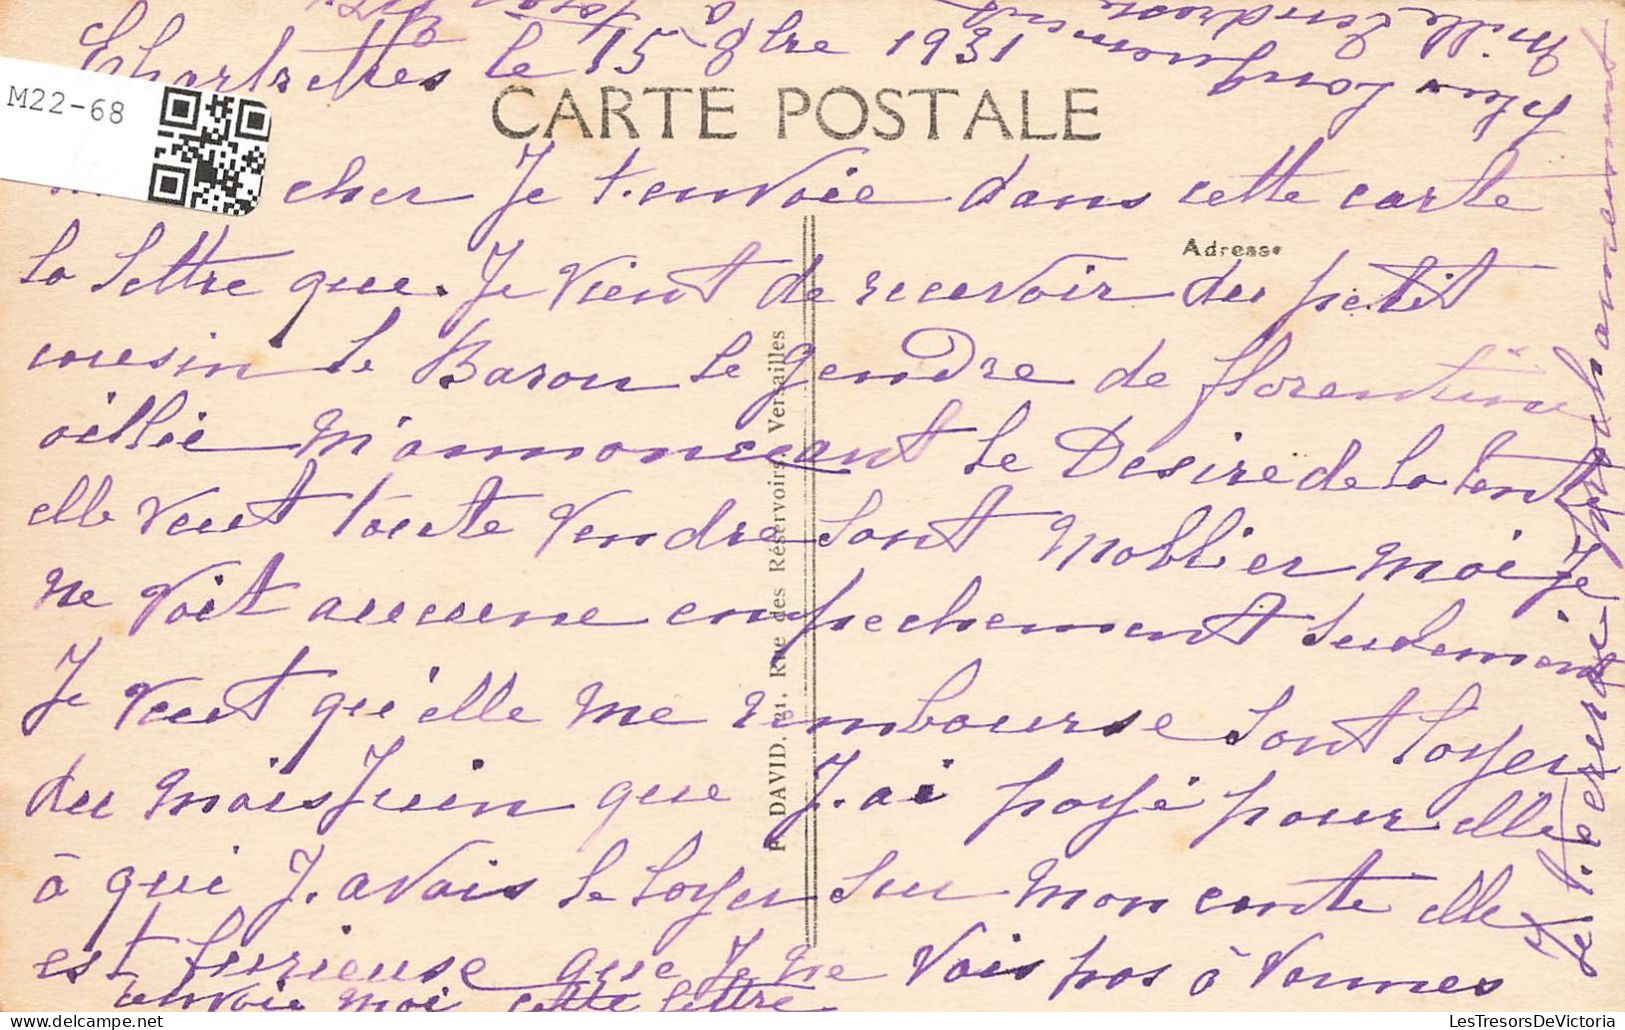 FRANCE - Chelles - Chartrettes - Vue Sur Le Prêche - Carte Postale Ancienne - Chelles